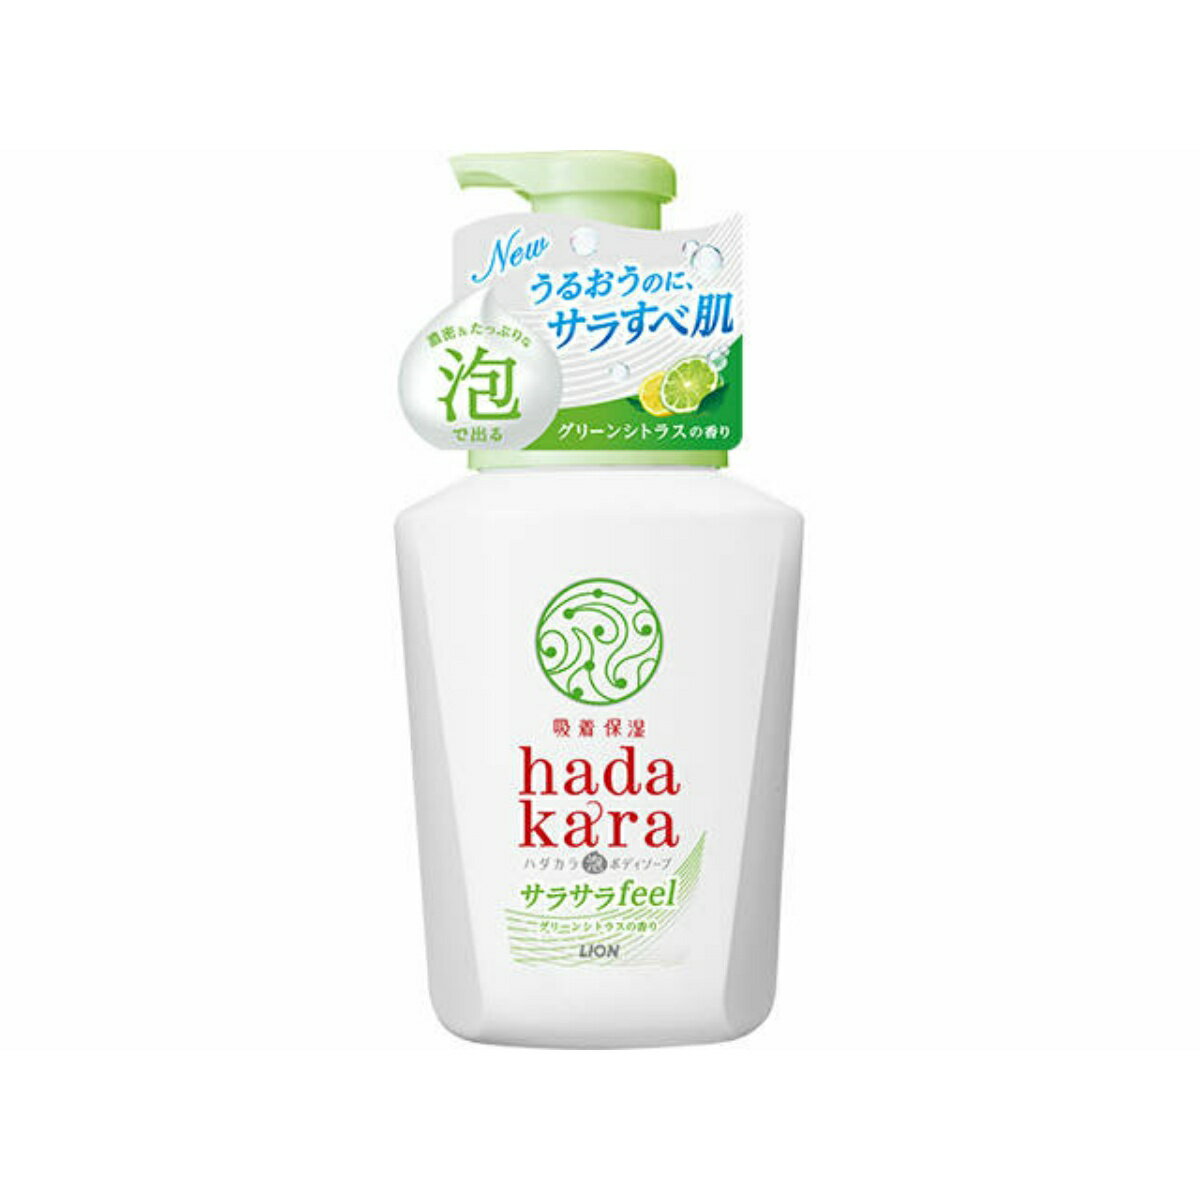 ハダカラ 泡で出てくるサラサラfeelタイプ グリーンシトラスの香り / 本体 / 530ml / グリーンシトラス